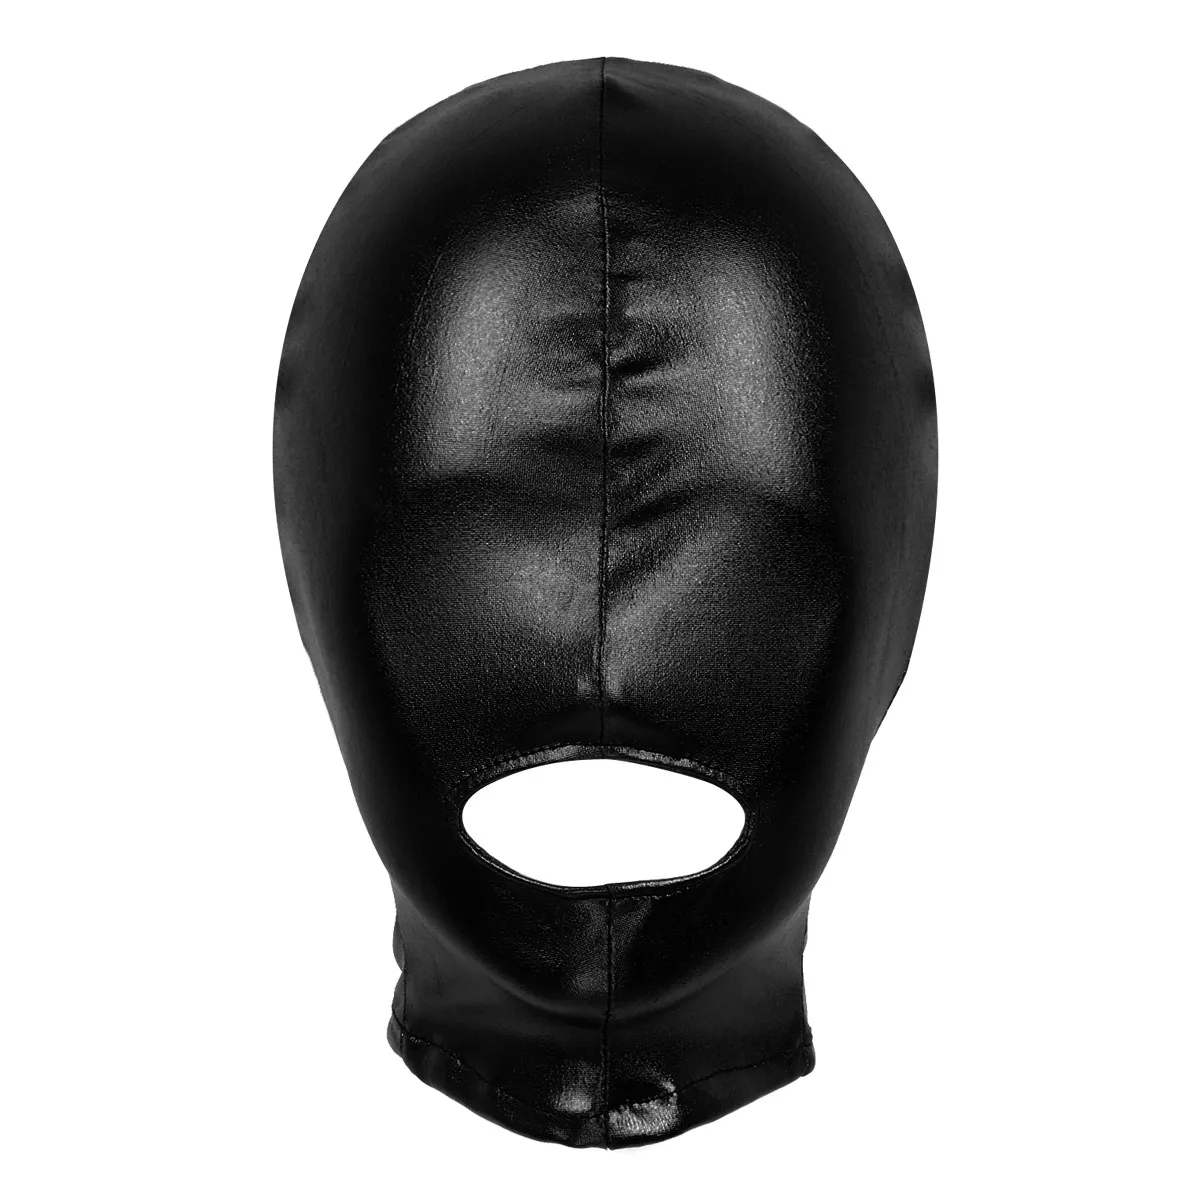  Unisex erkek veya kadınlar lateks parlak metalik açık ağız deliği headgear tam yüz maske kaputu kostüm kiti Masquerade cosplay clubwear